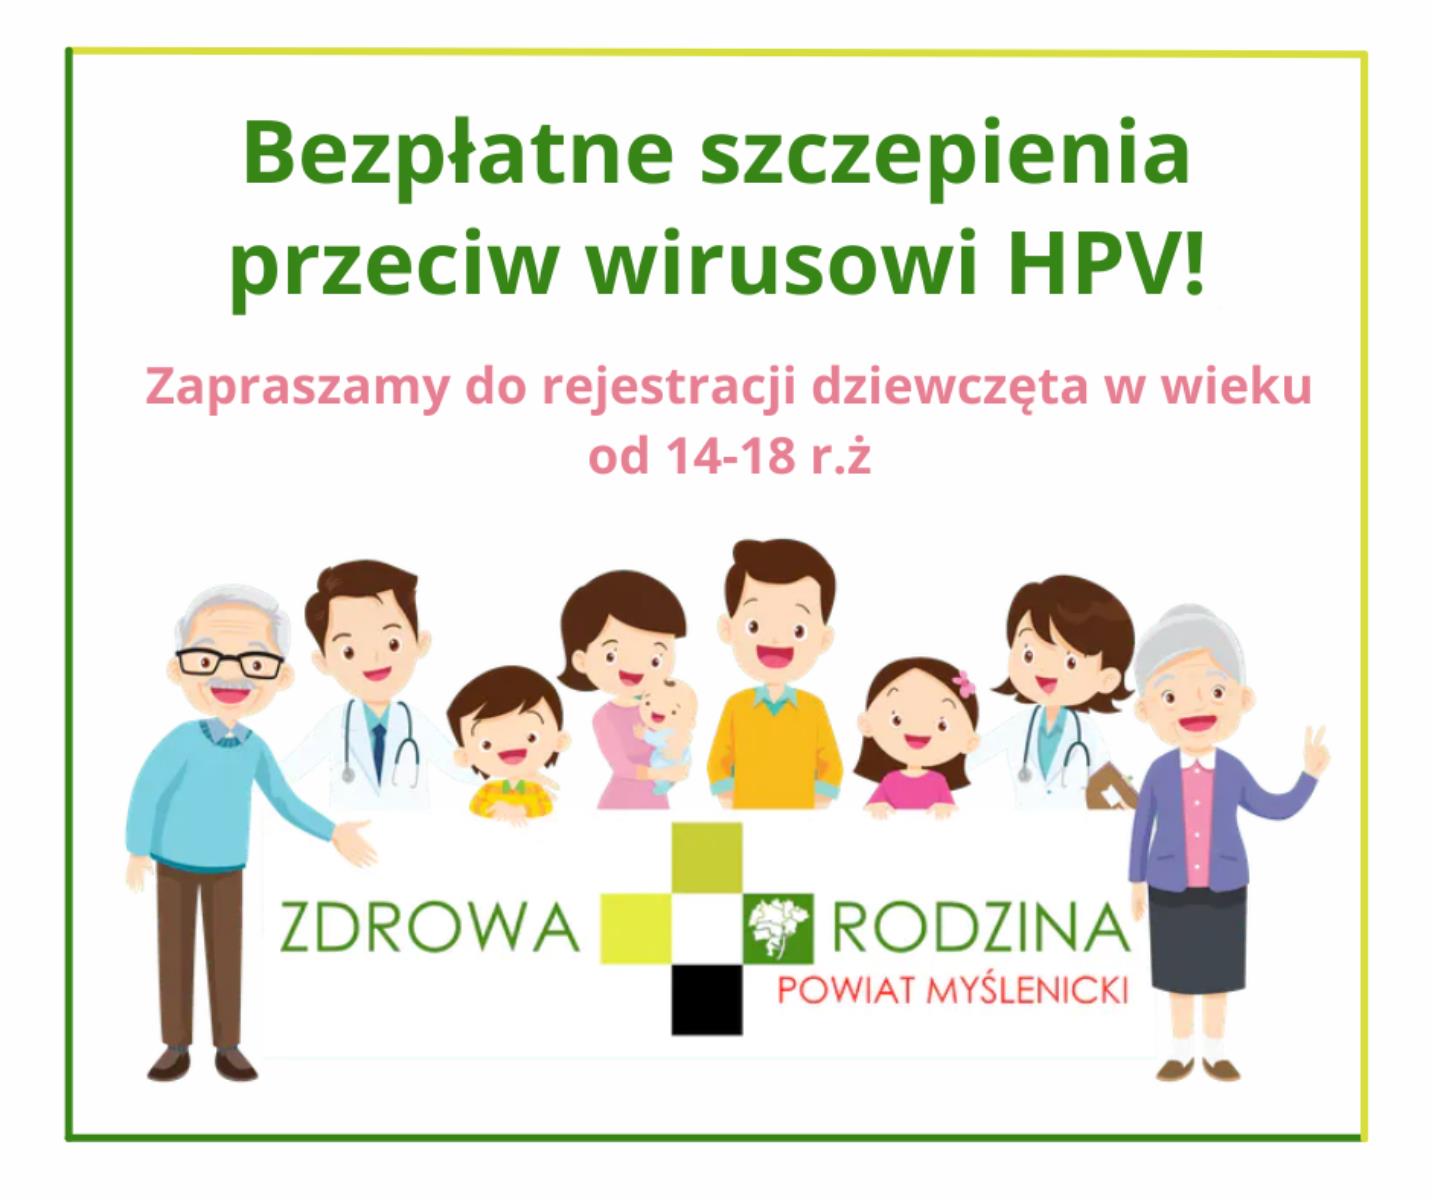 Zapraszamy do rejestracji dziewcząt od 14-18 r. ż. na bezpłatne szczepienia przeciw wirusowi HPV!